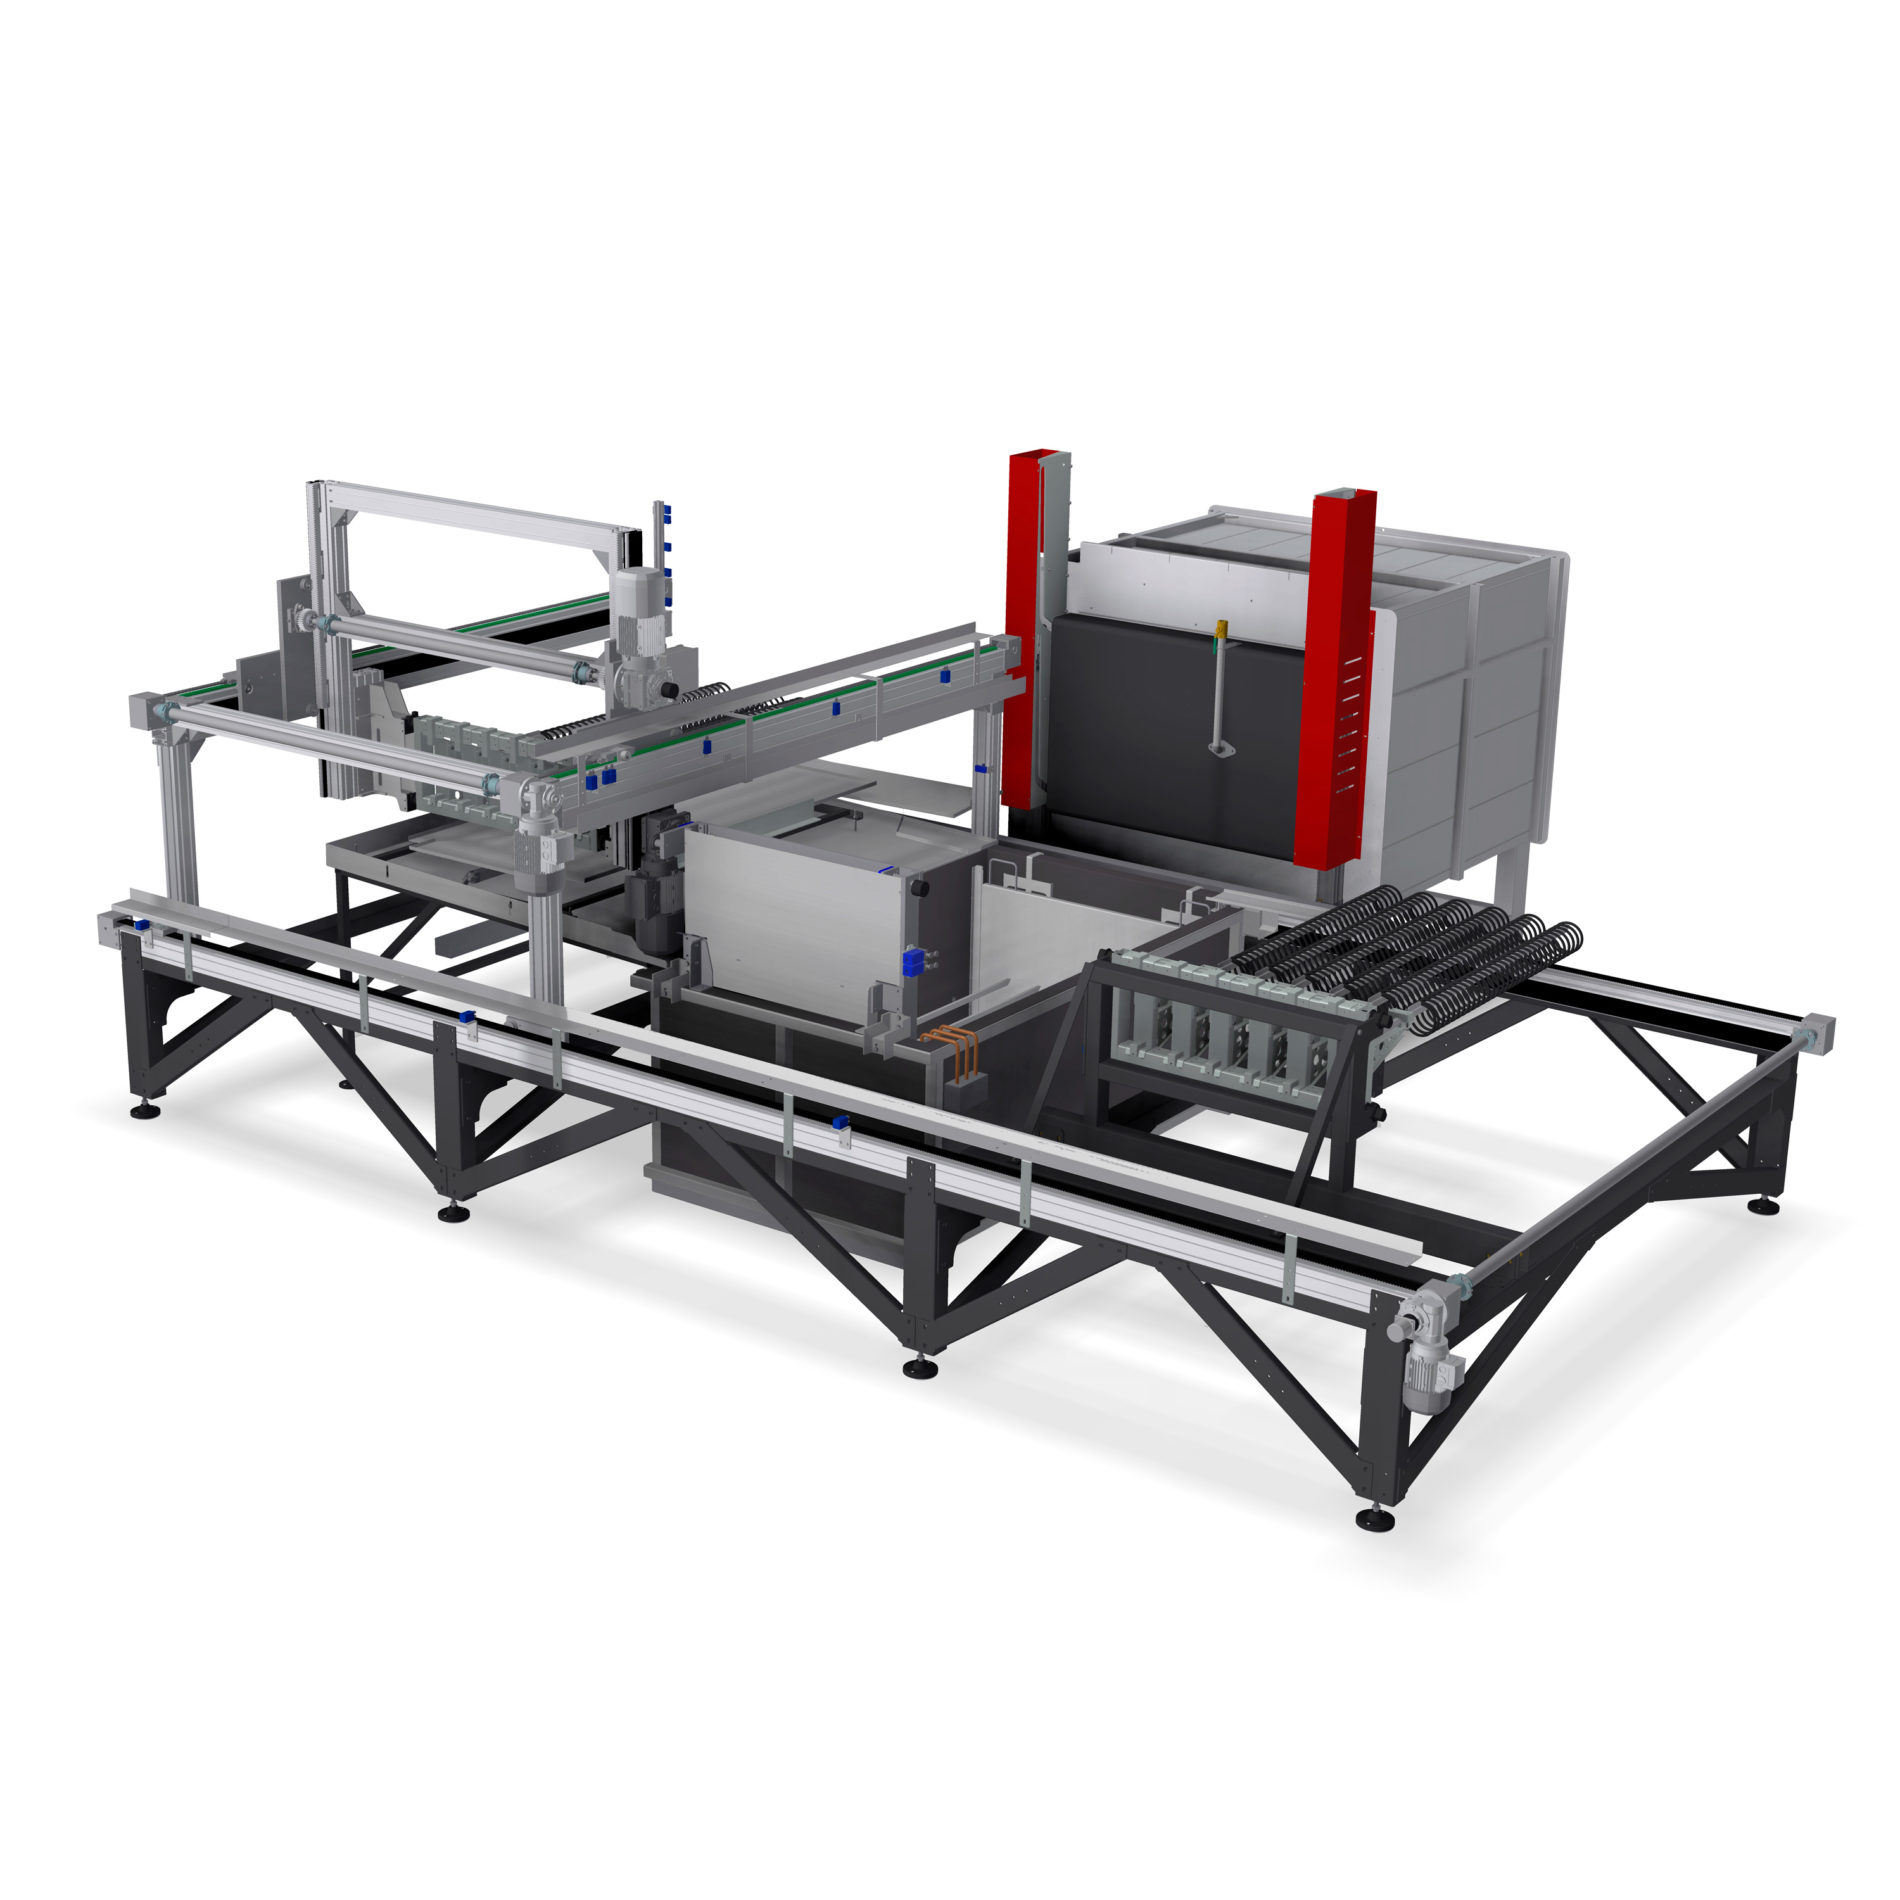 Automatische Härtelinie bestehend aus:
Ofen mit horizontaler Kammer + Abschreckbecken + Manipulationsroboter